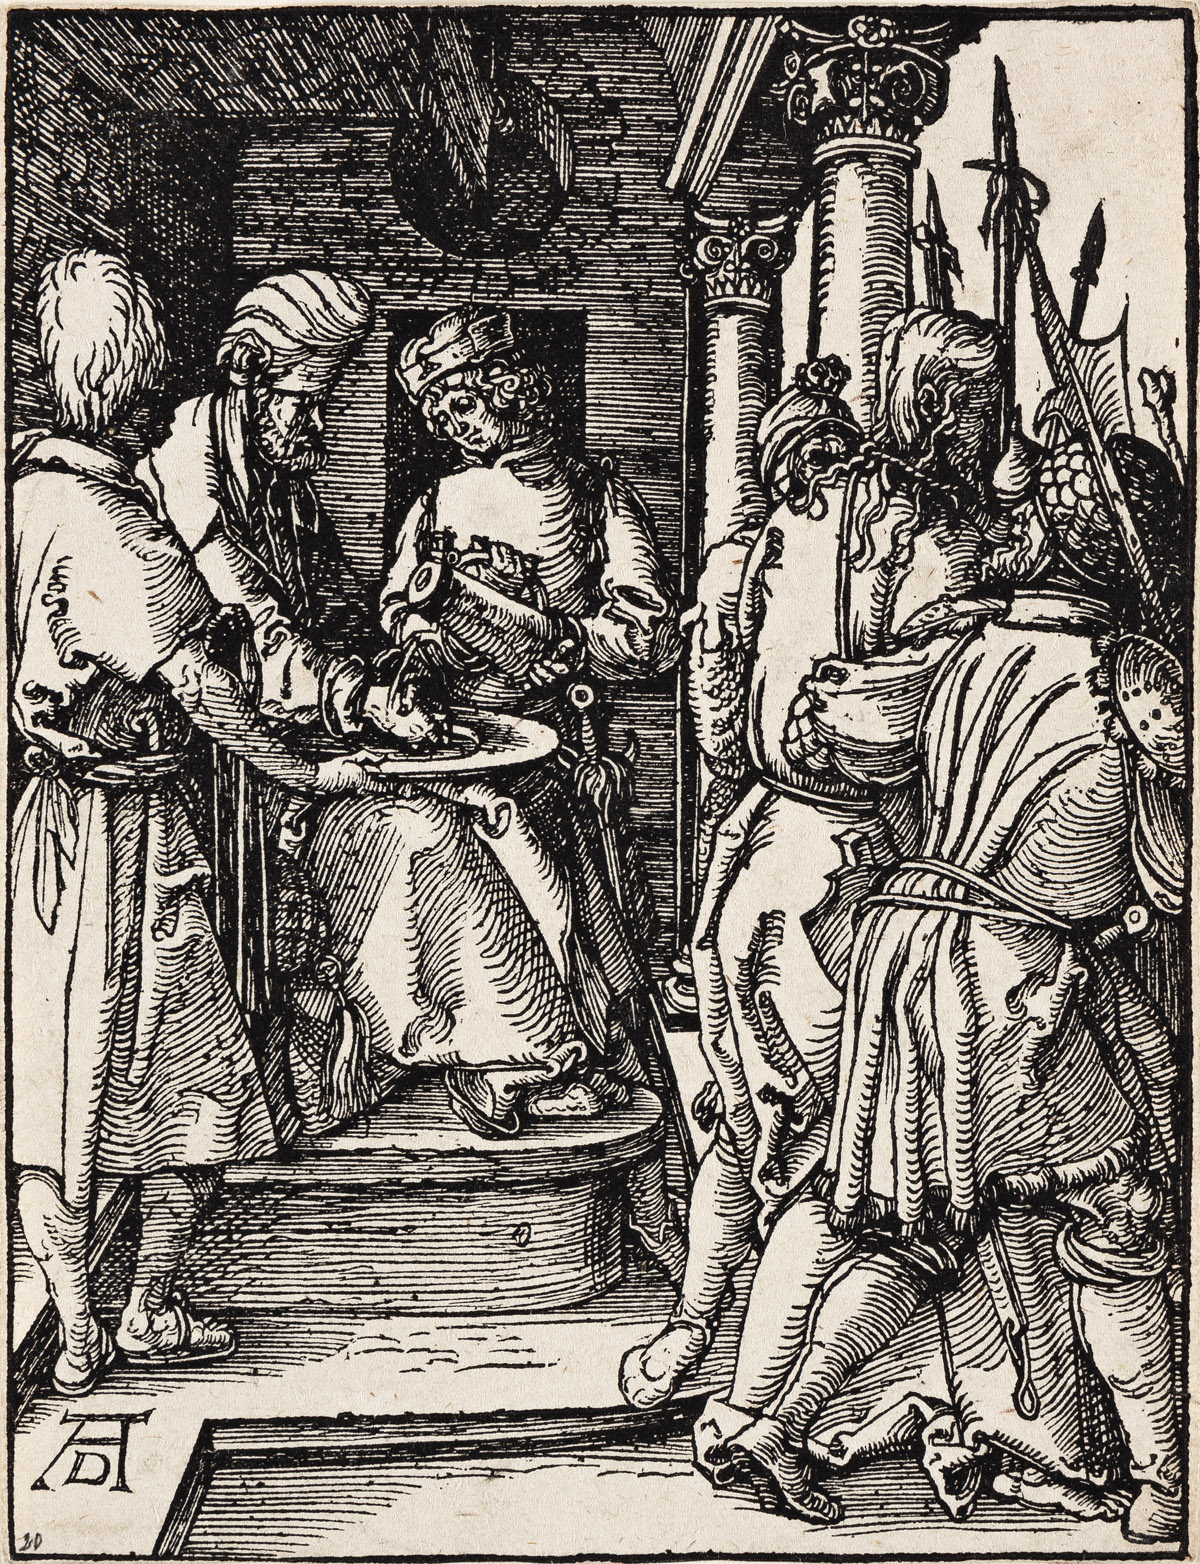 ALBRECHT DÜRER Pilate Washing His Hands.